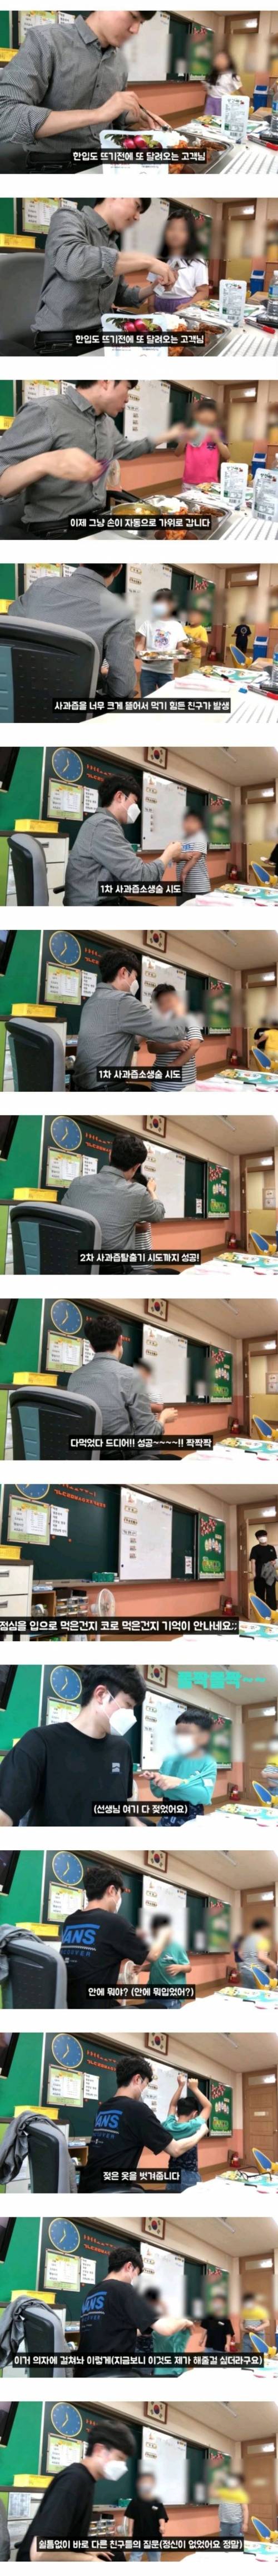 18 흔한 초1 교사의 점심시간.jpg